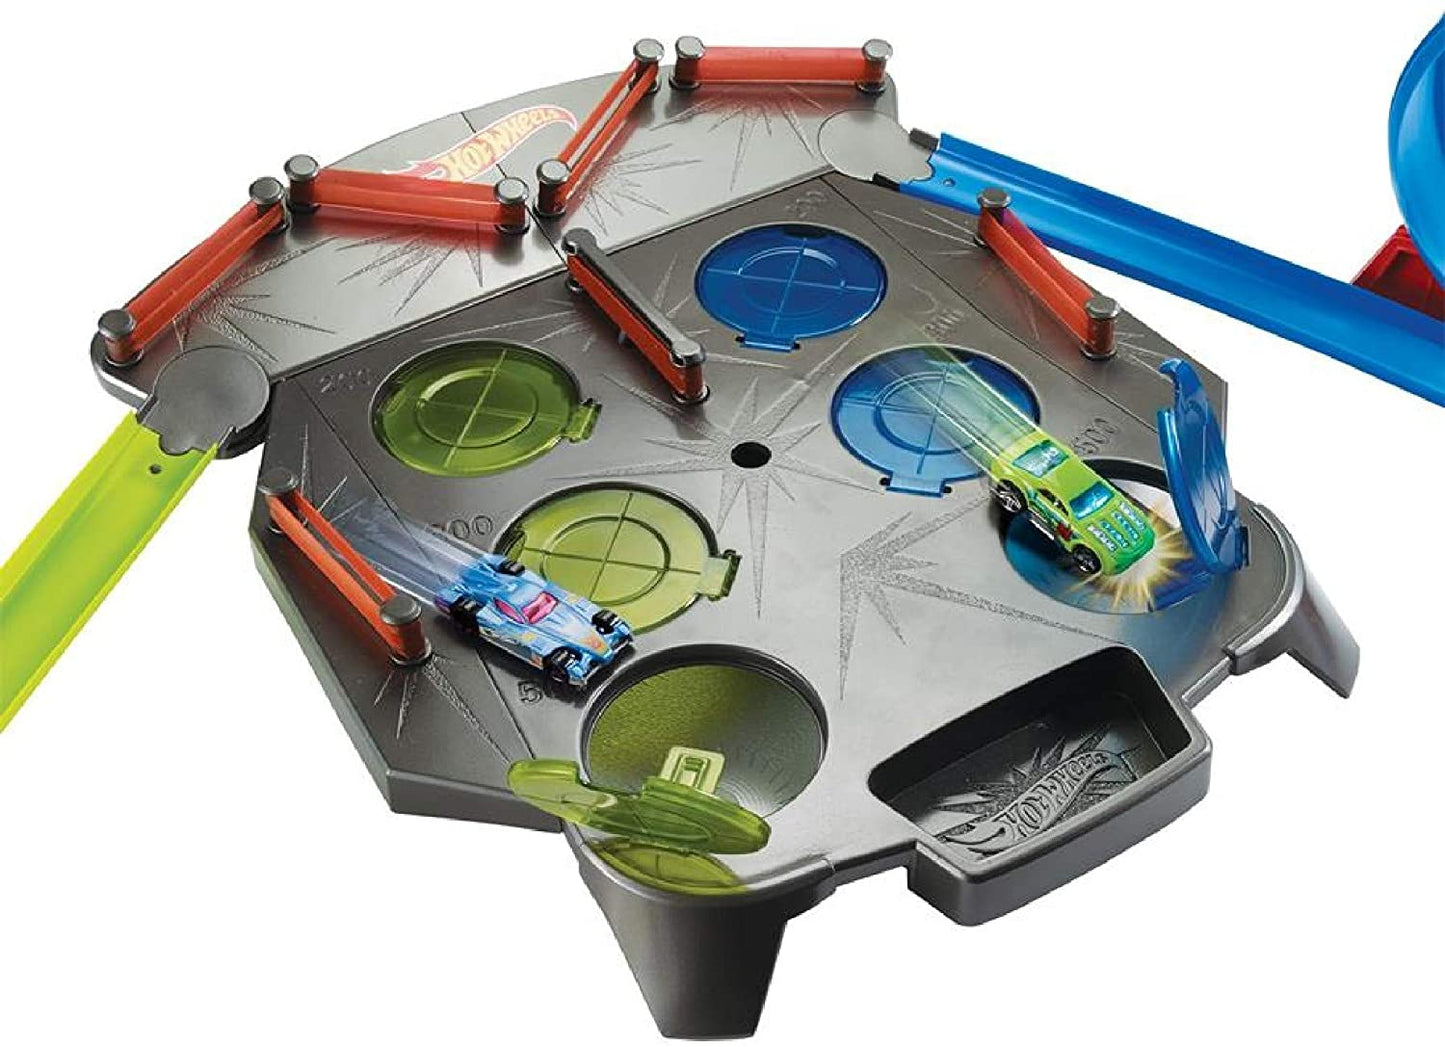 Hot Wheels - Rebound Raceway Playset